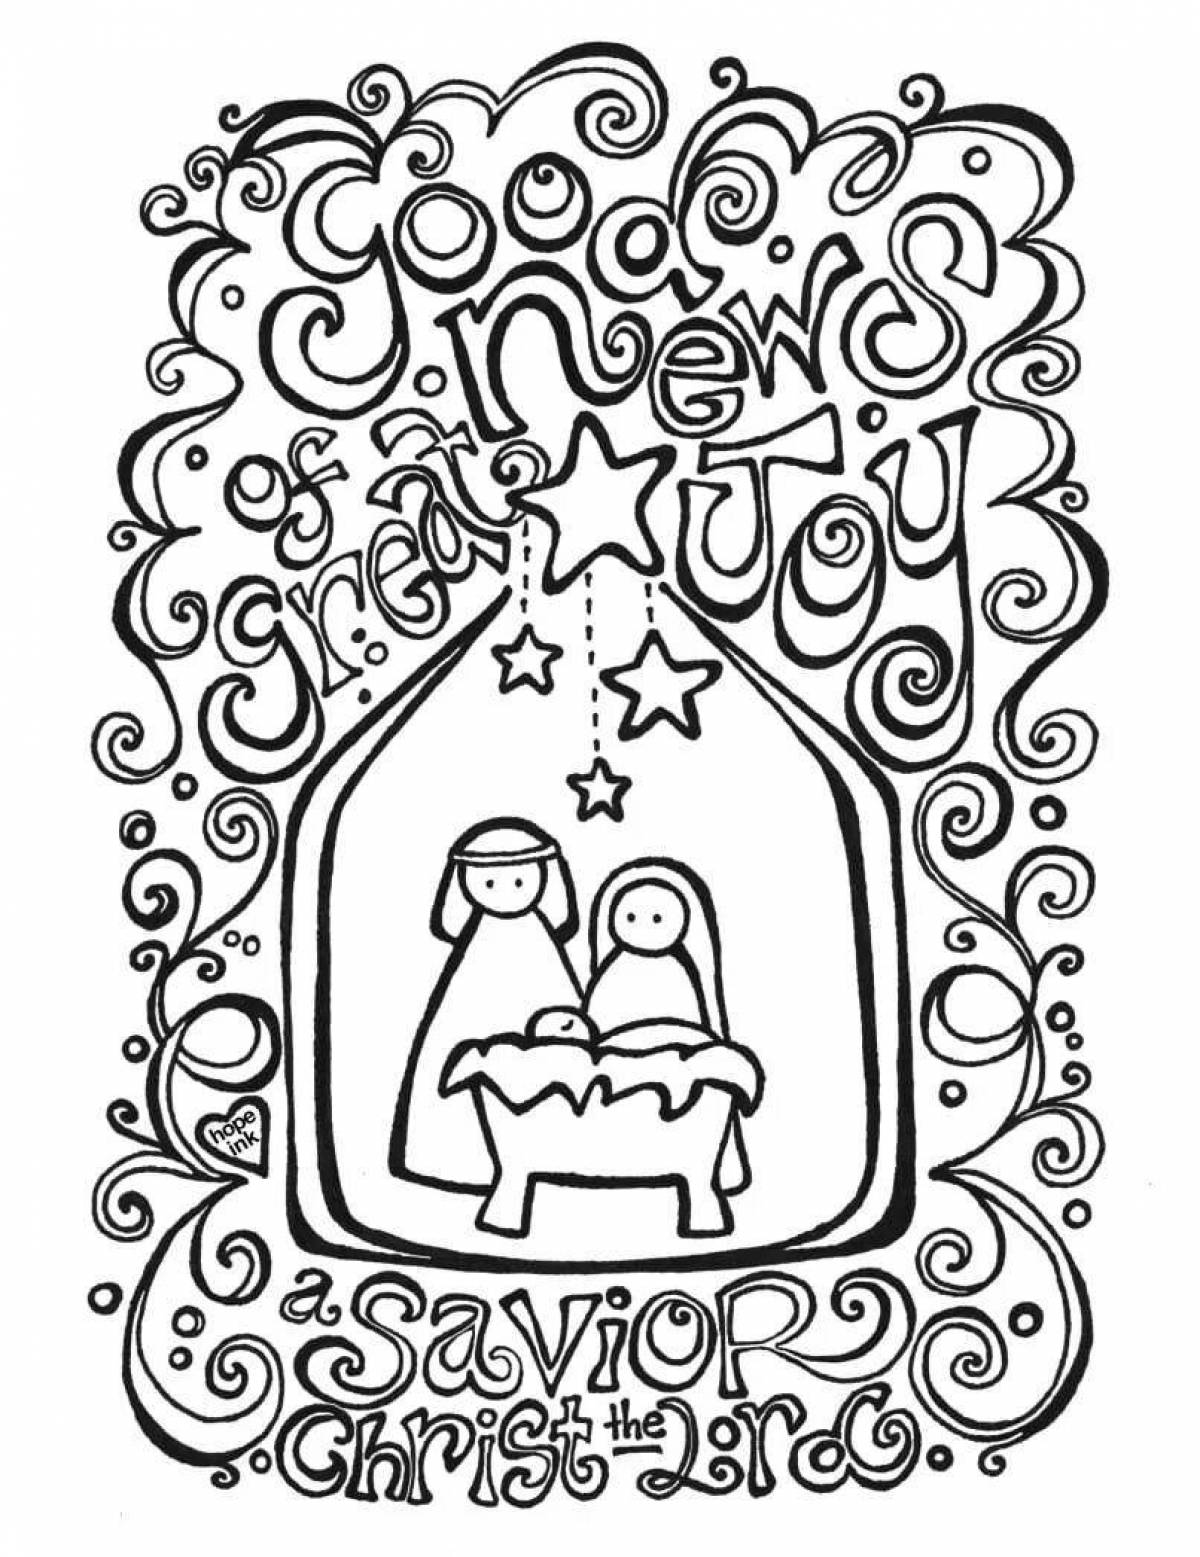 Serene nativity scene coloring book for kids